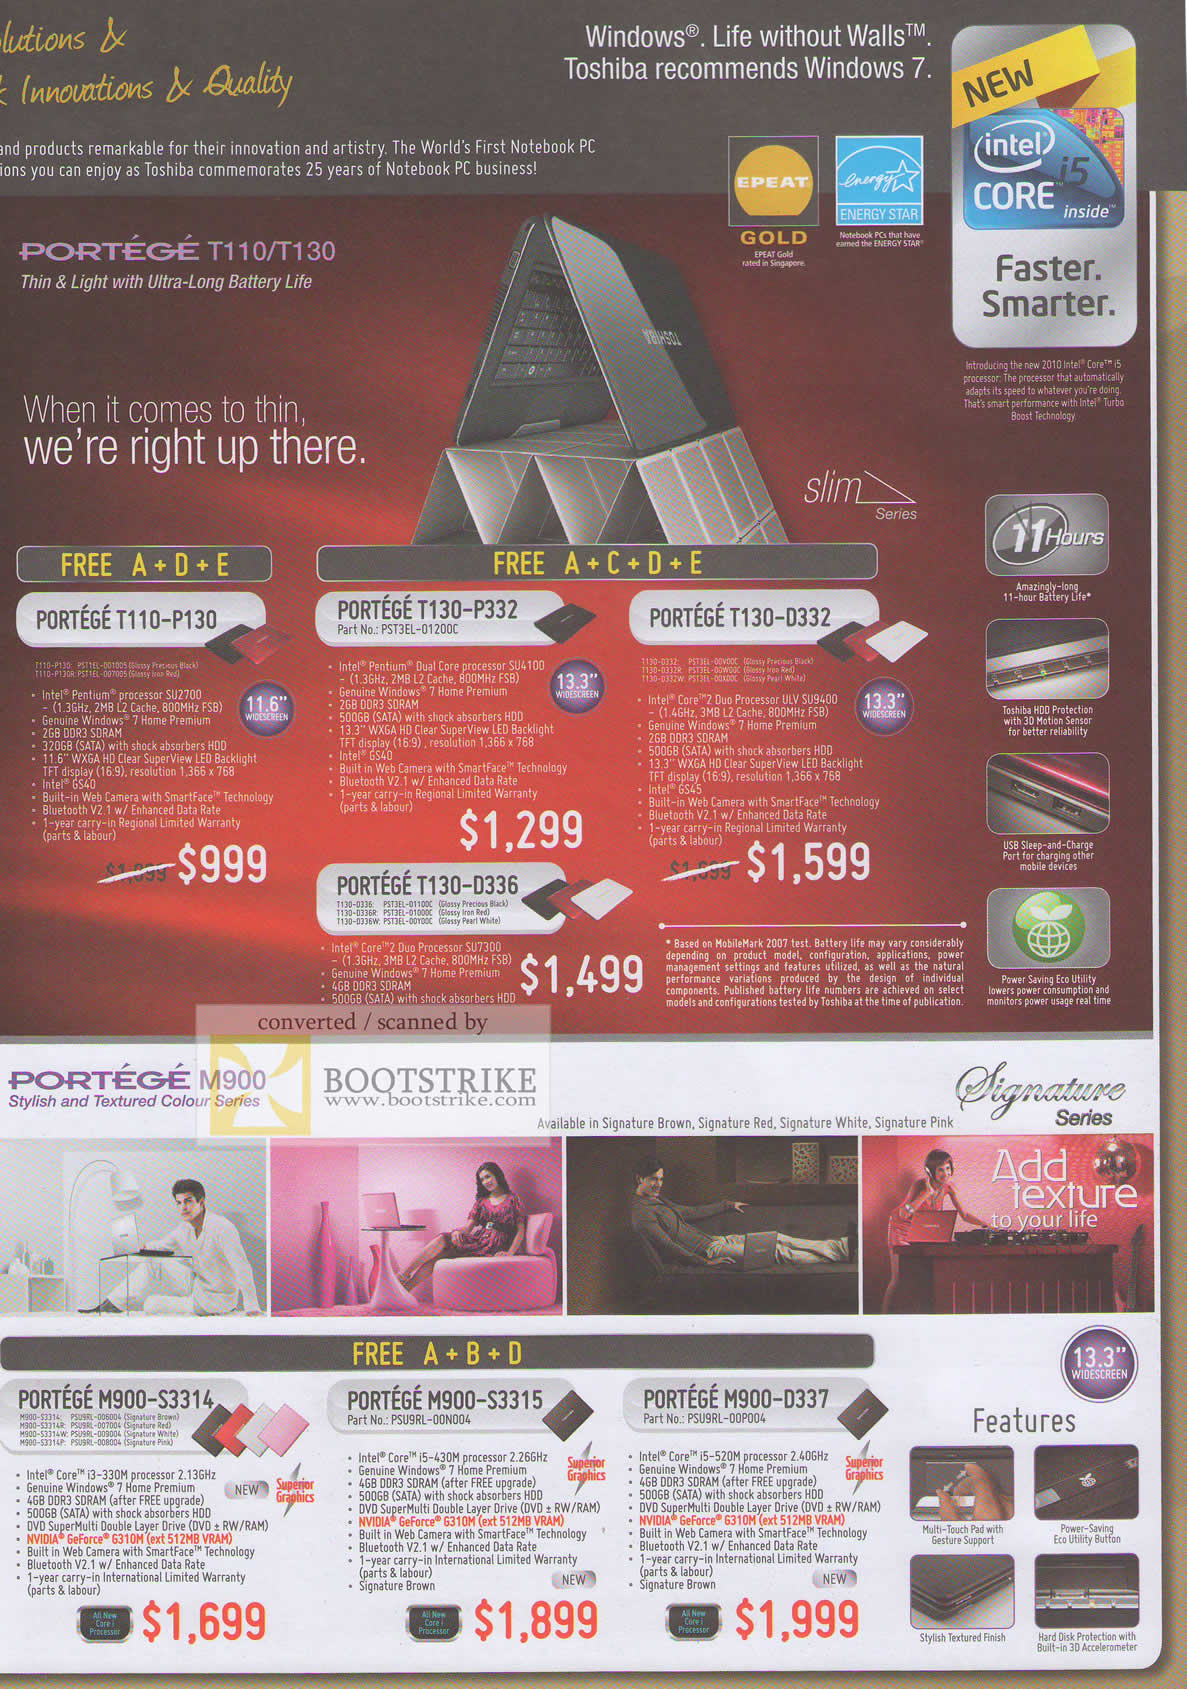 IT Show 2010 price list image brochure of Toshiba Notebooks Portege T110 T130 P332 D332 D336 M900 S3314 S3315 D337